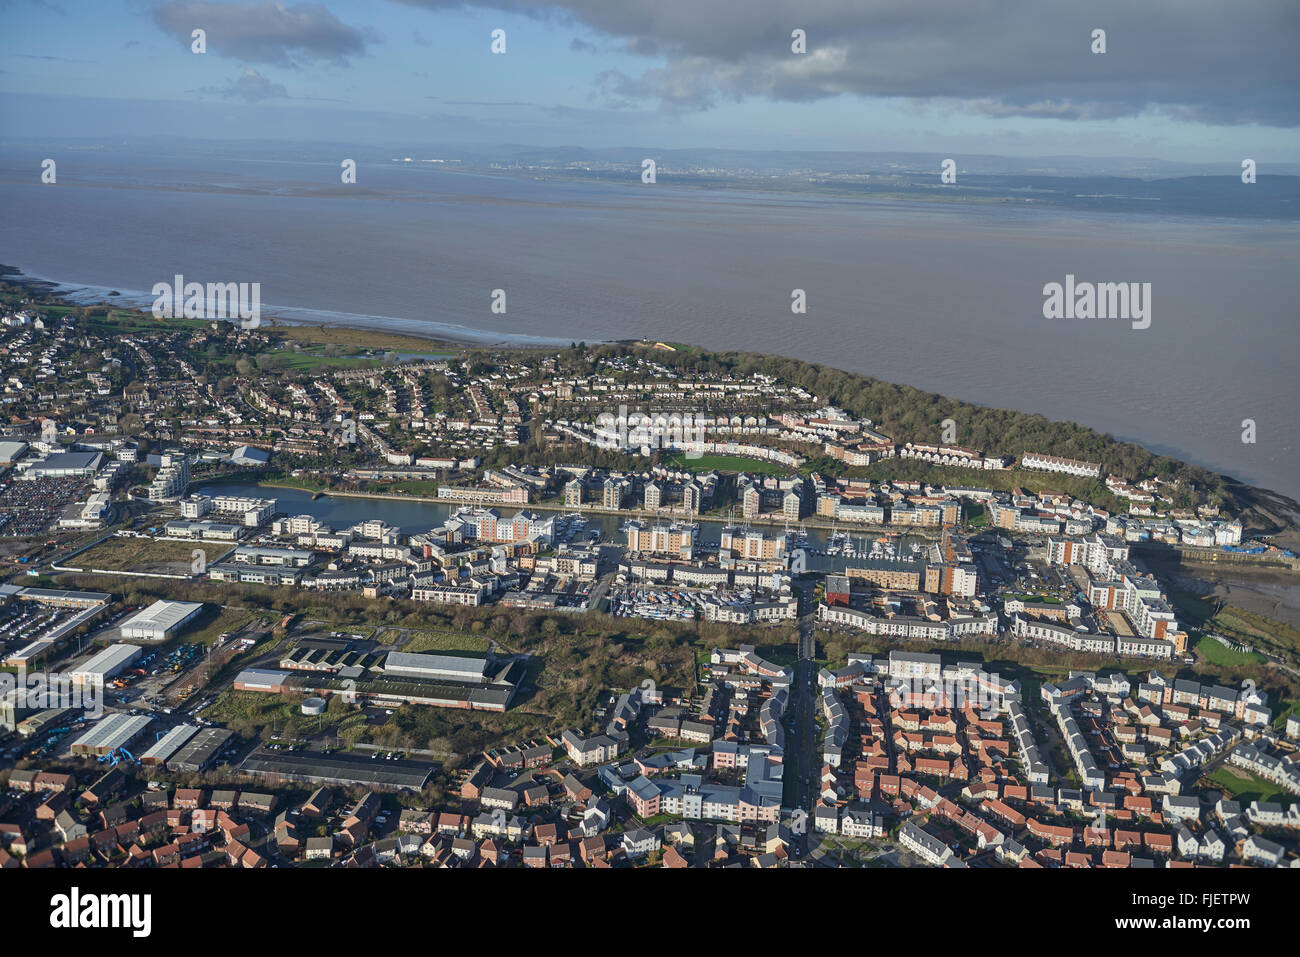 Una vista aérea de la ciudad de Somerset Portishead con el Canal de Bristol y Newport, visible en la distancia Foto de stock